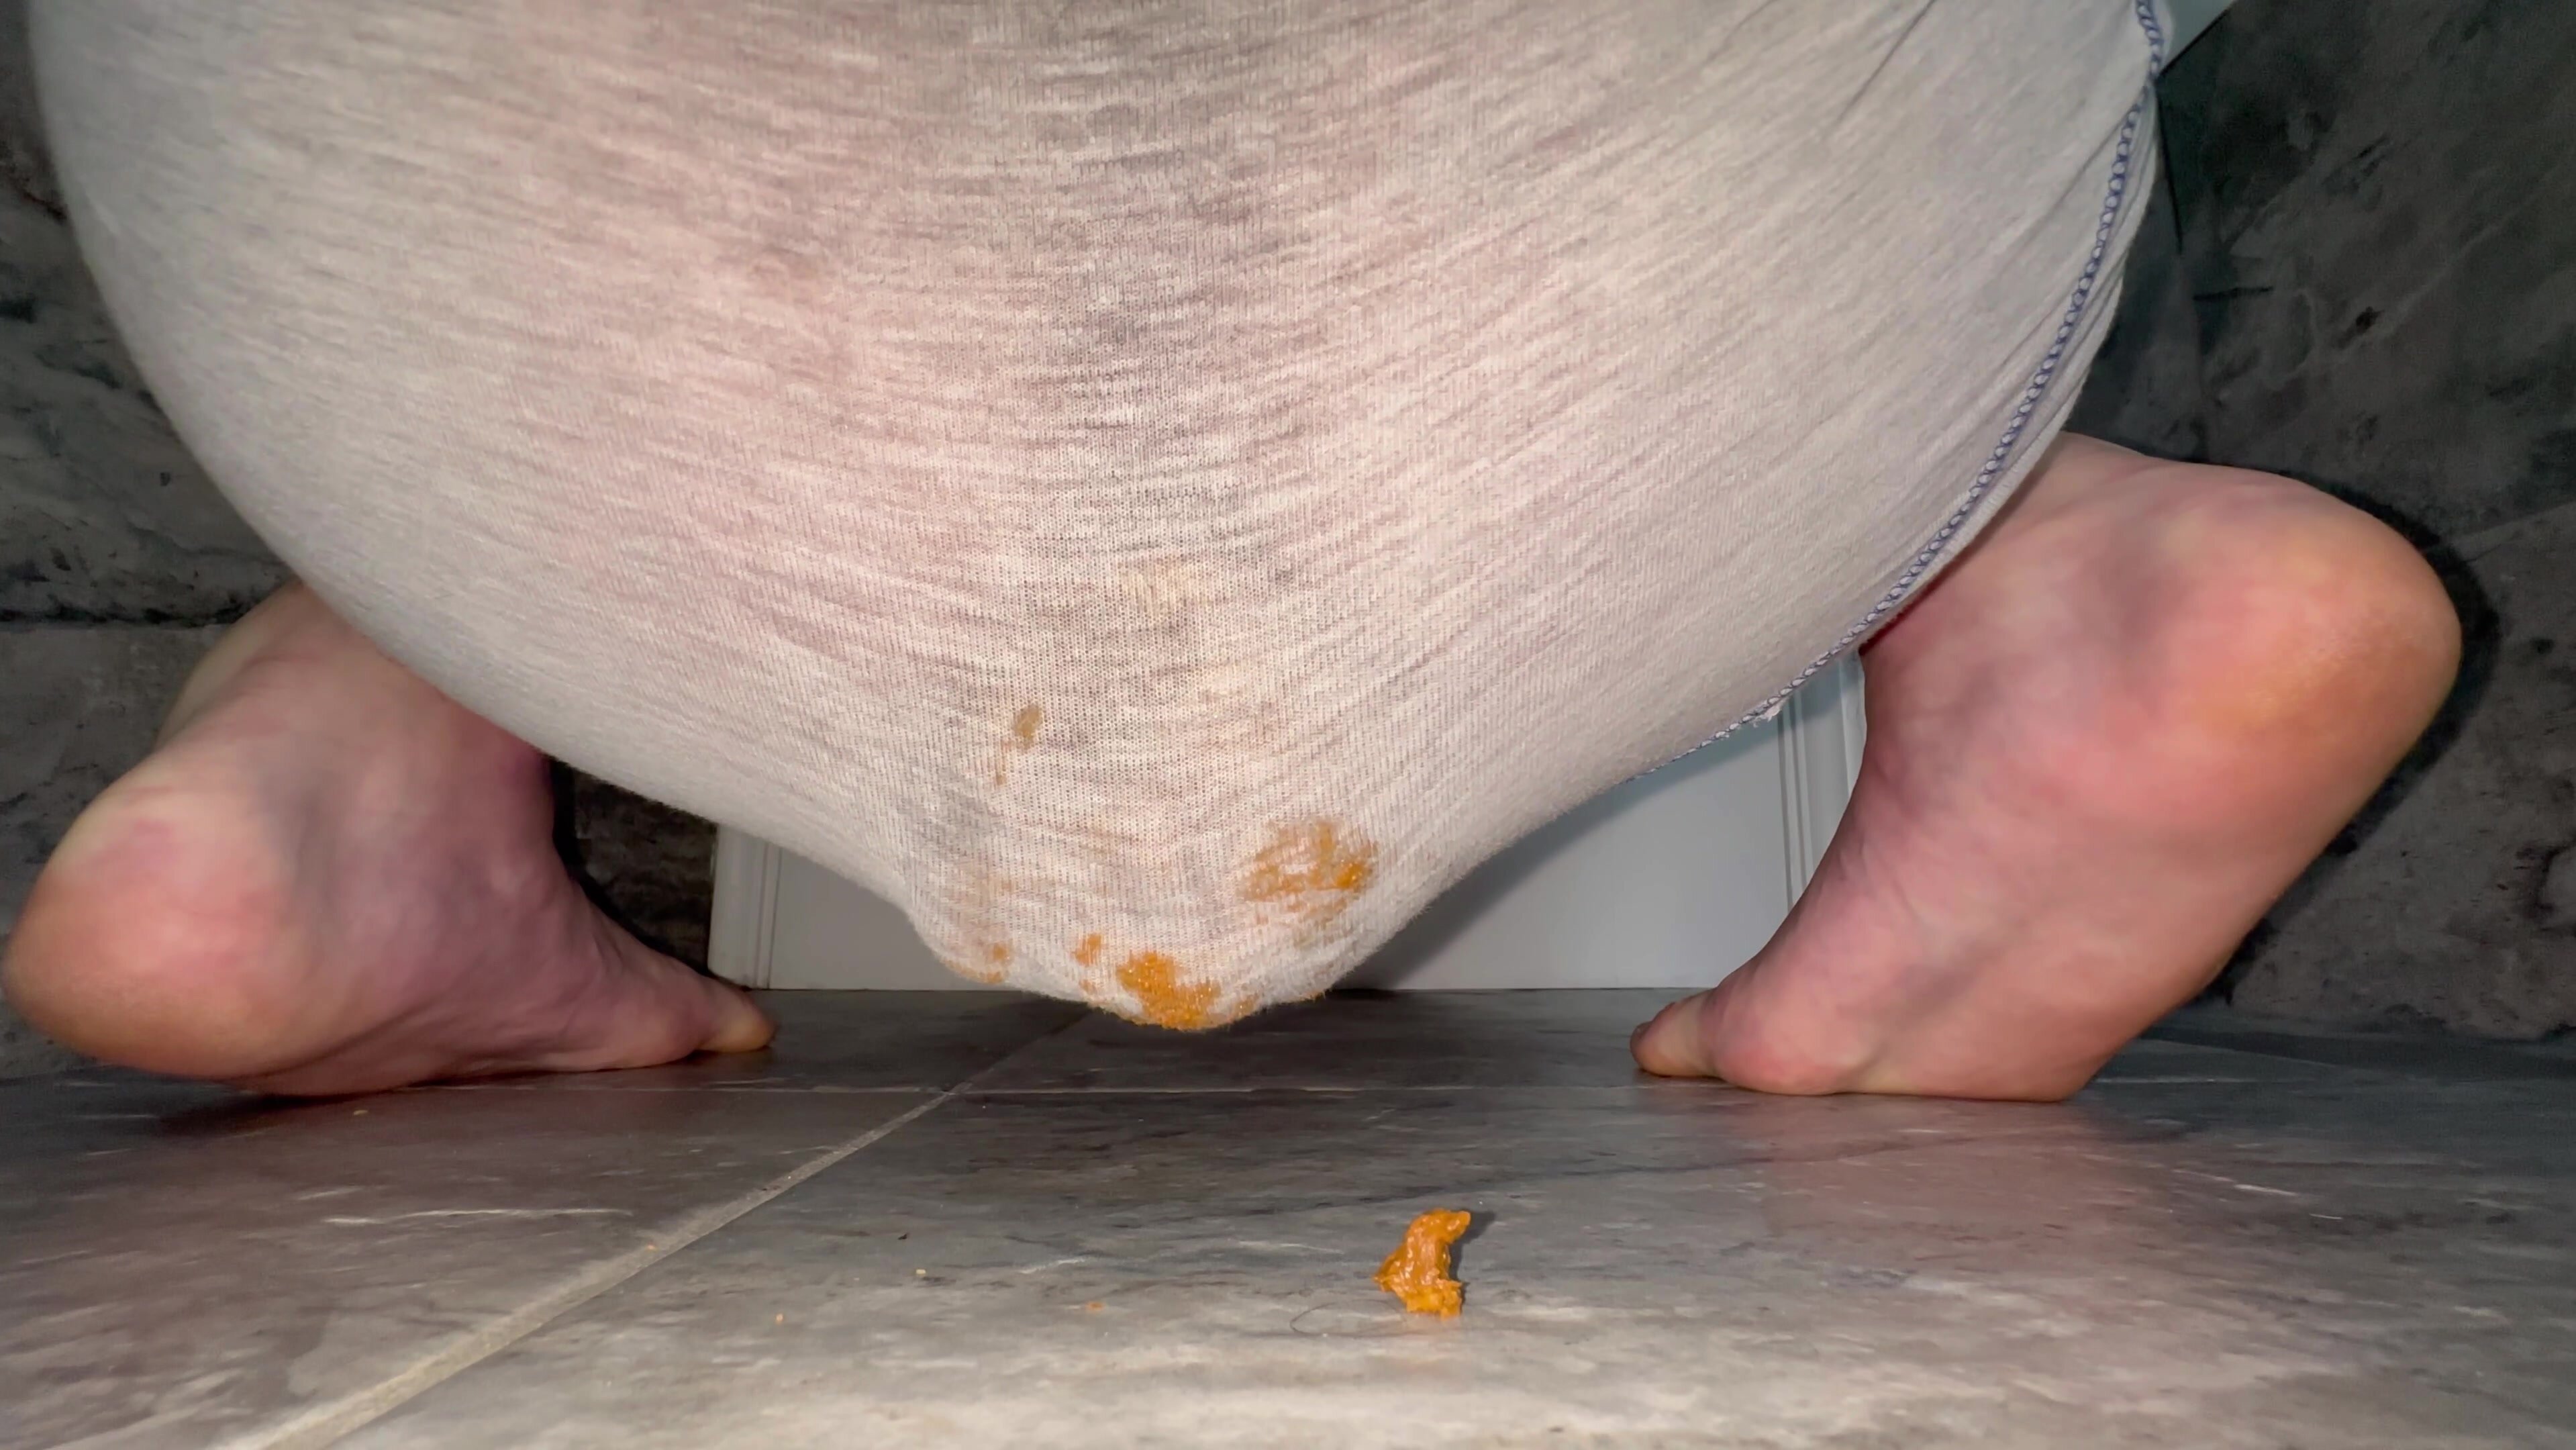 Huge sloppy panty poop - video 2